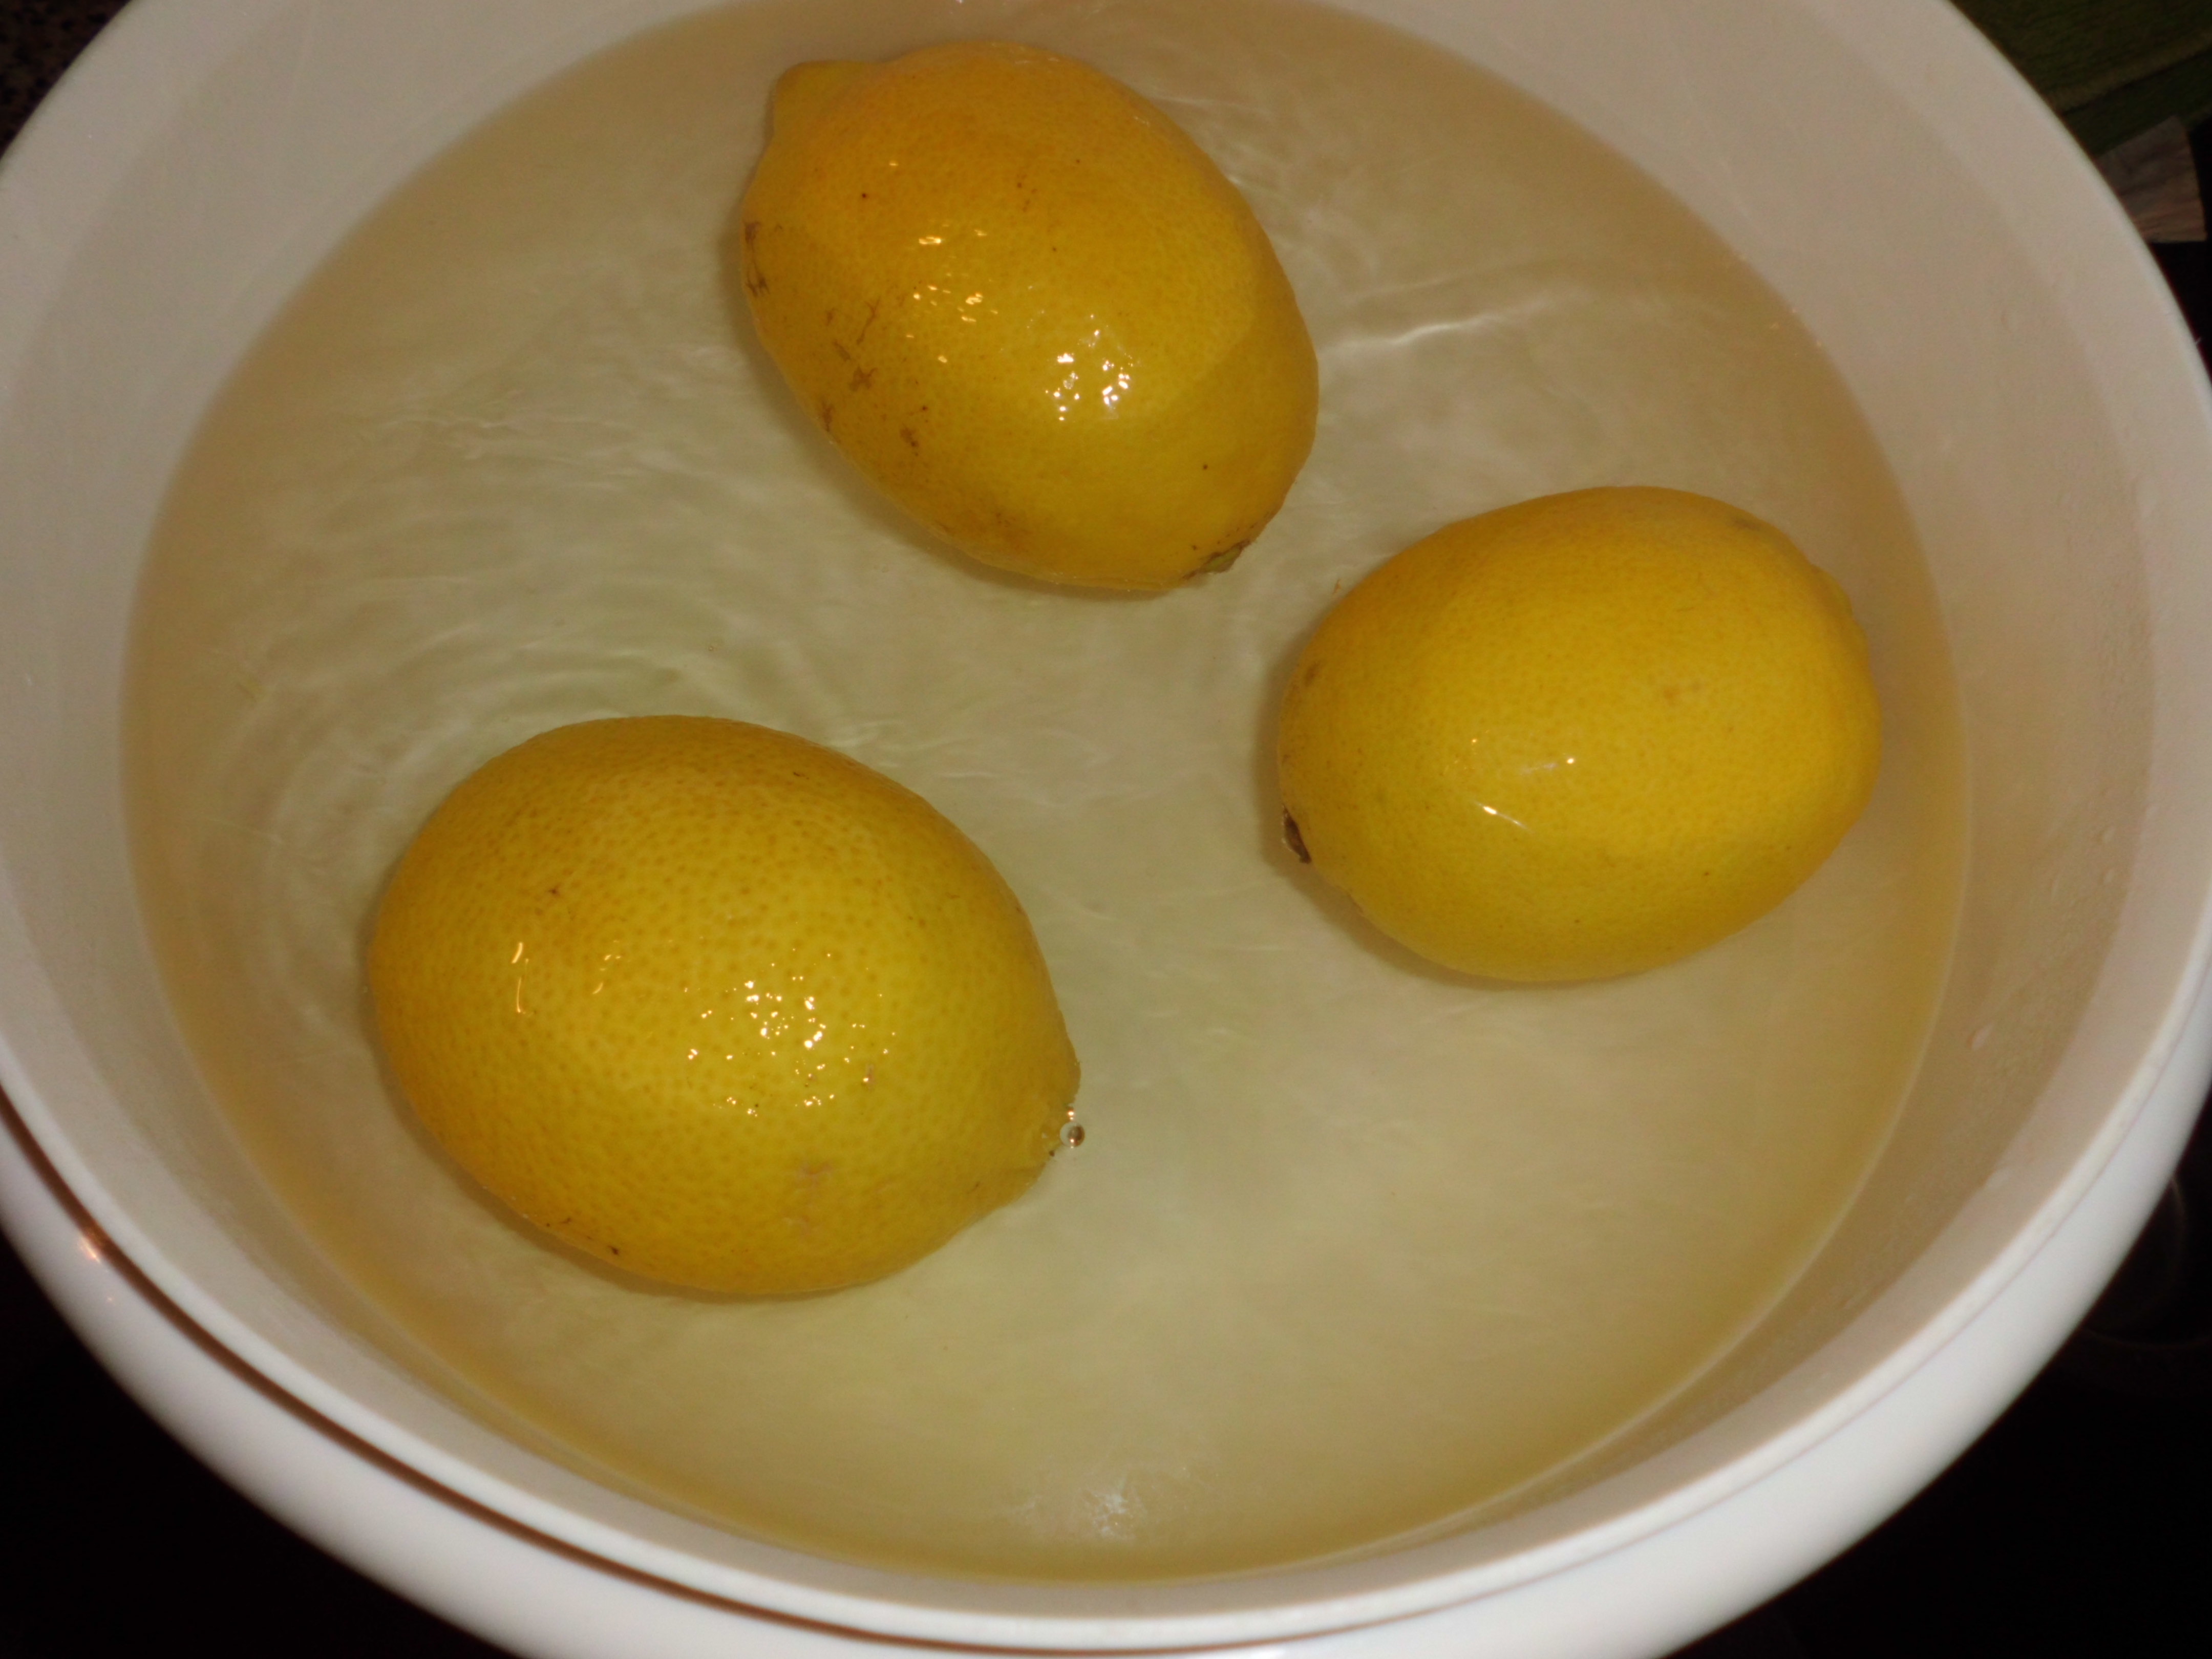 überbrühte, unbehandelte Zitronen